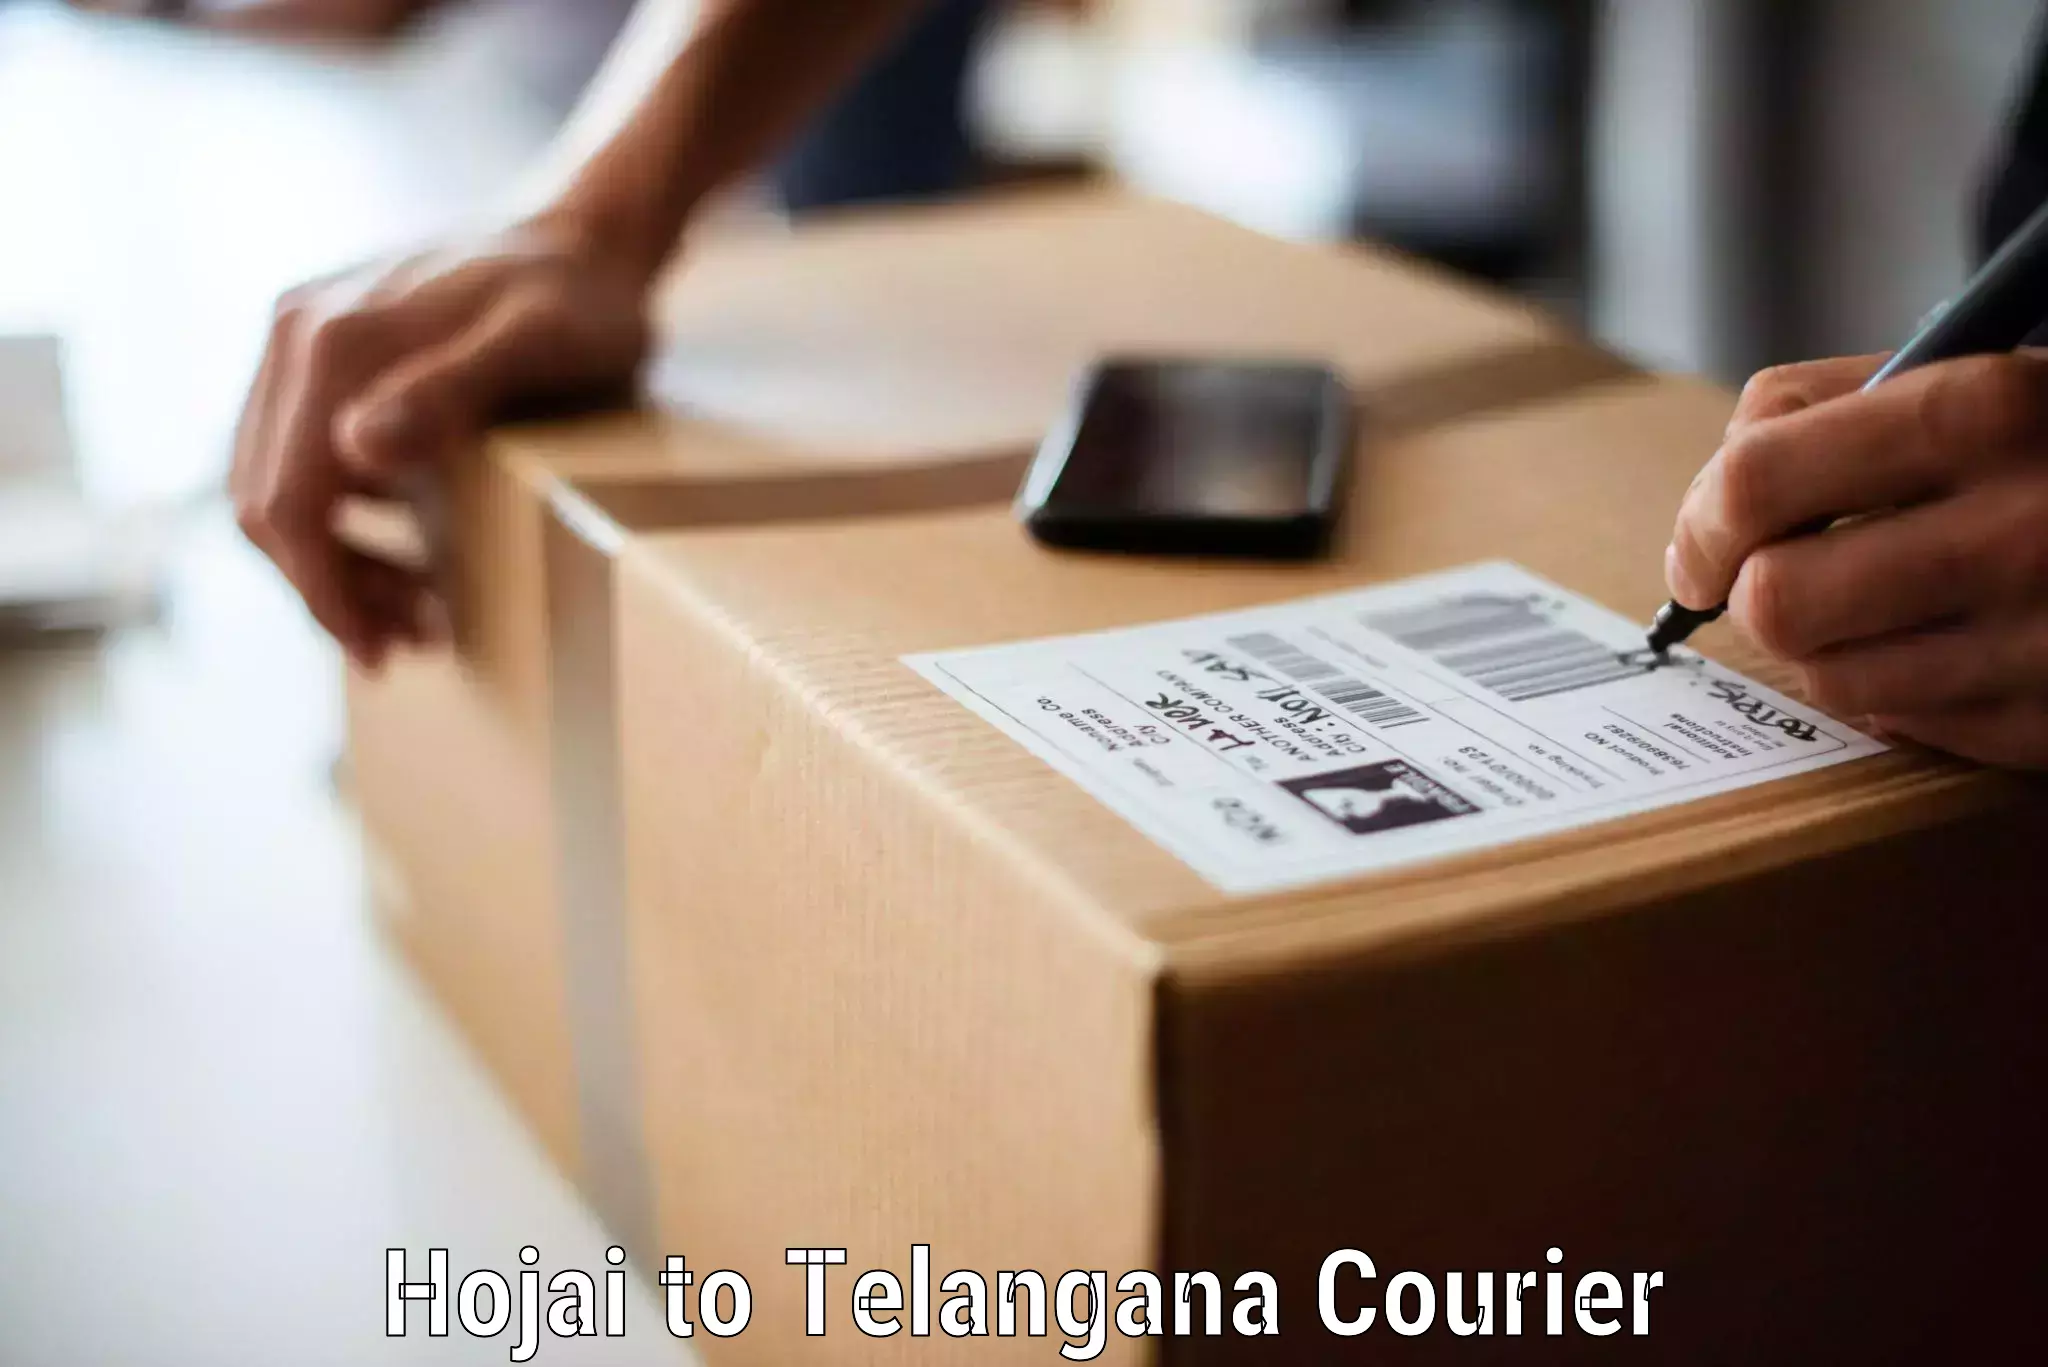 Moving and packing experts Hojai to Hanamkonda